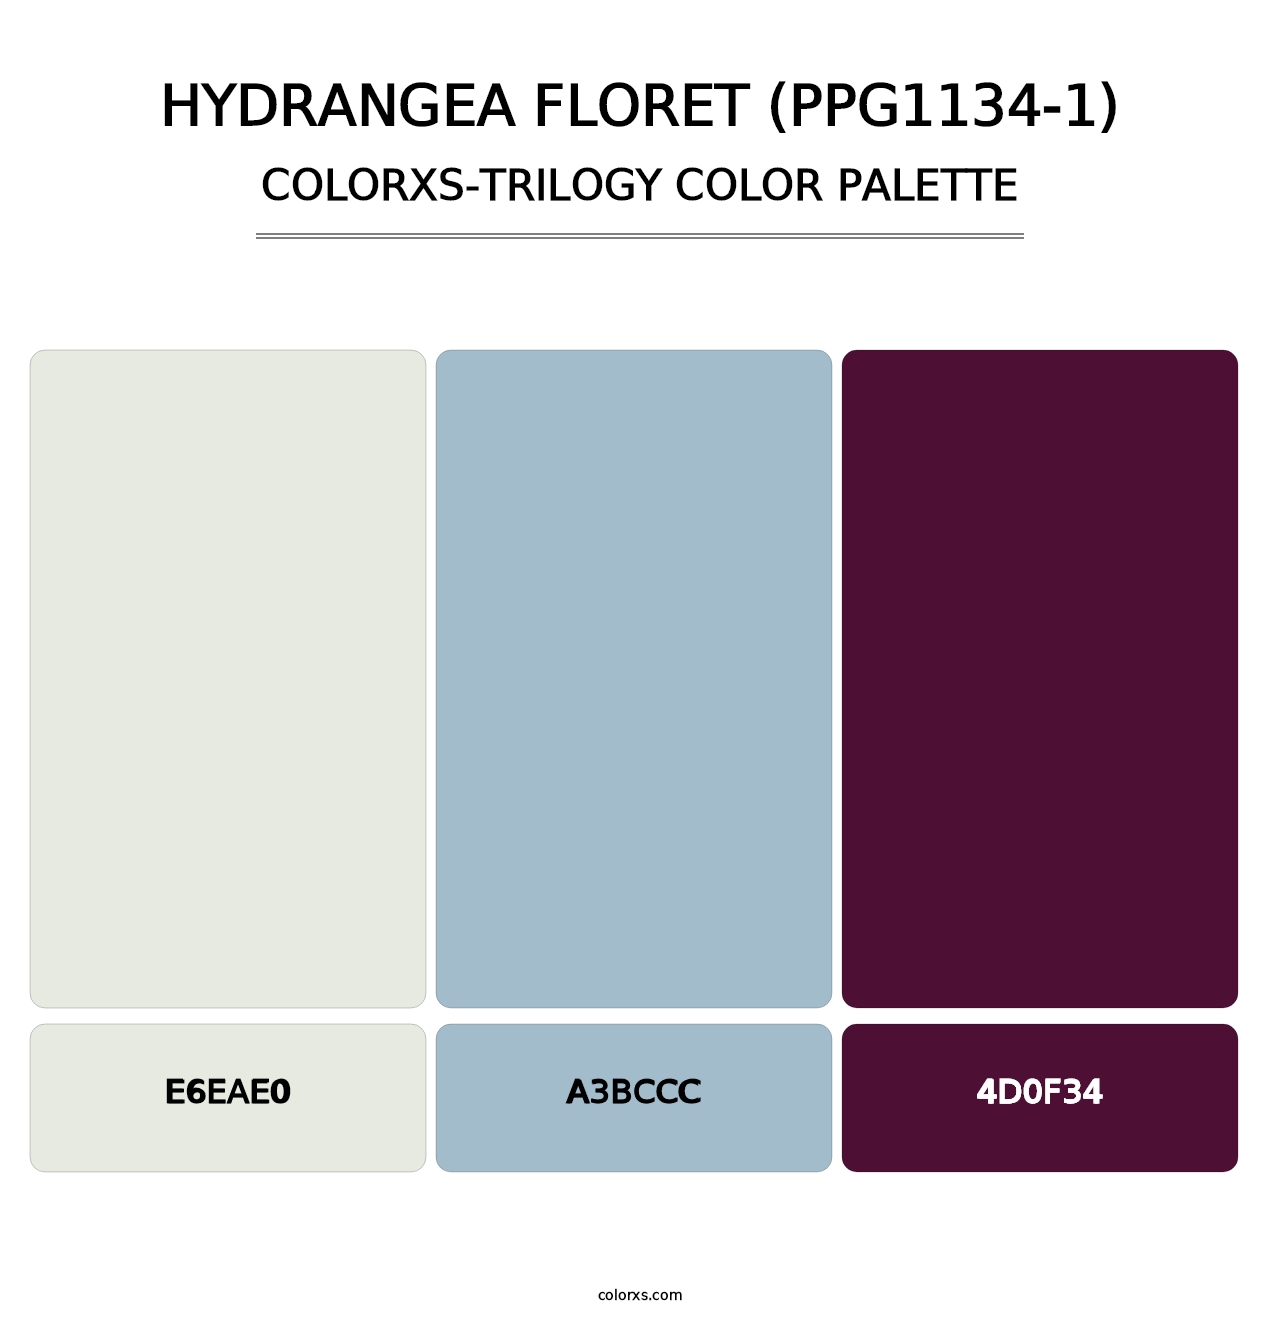 Hydrangea Floret (PPG1134-1) - Colorxs Trilogy Palette